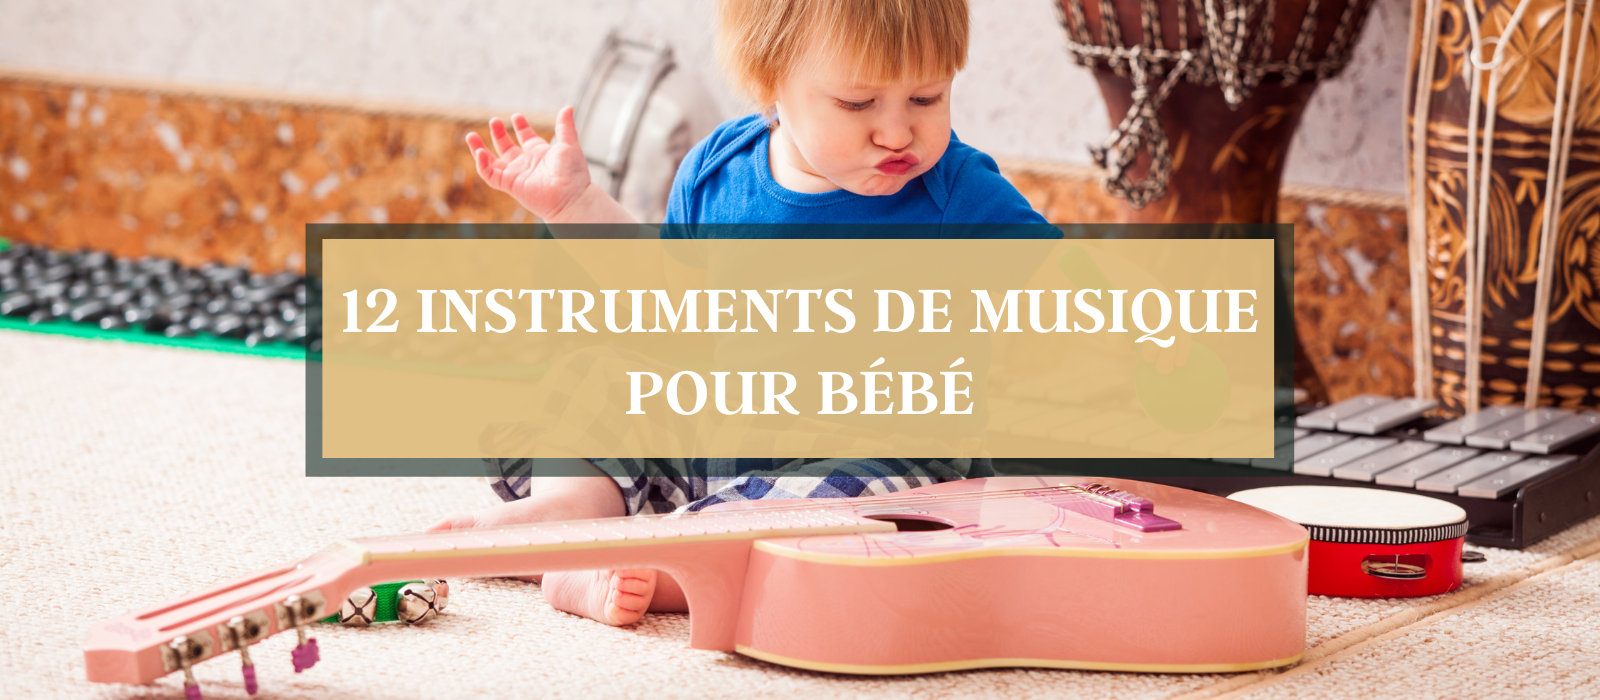 TOP 12 instrument de musique enfant